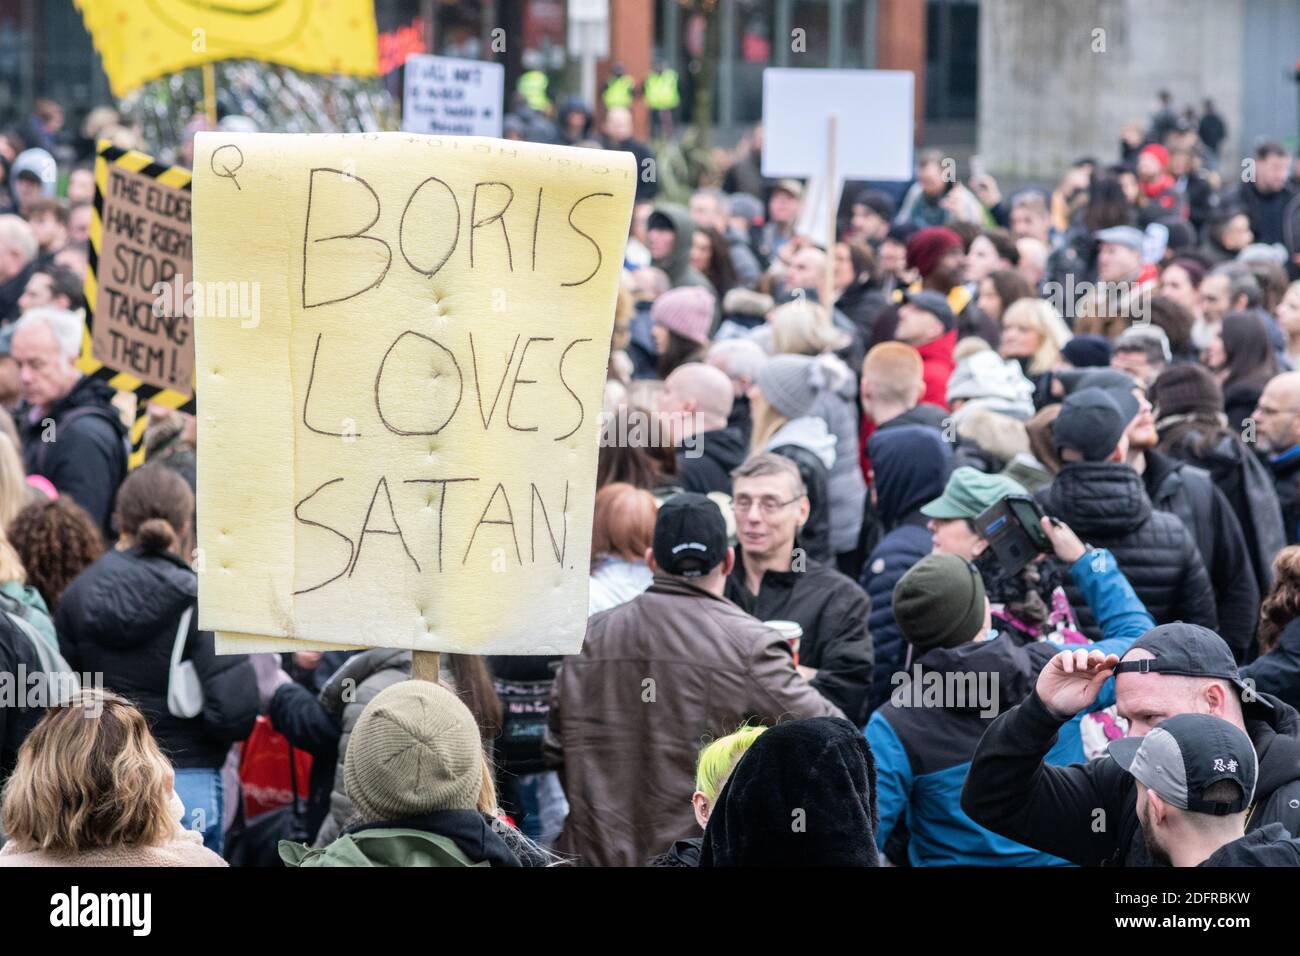 Manchester Piccadilly Gardens 6 décembre 2020 : manifestation contre le verrouillage/système anti-Tier. Une personne tient un écriteau lisant Boris aime Satan Banque D'Images